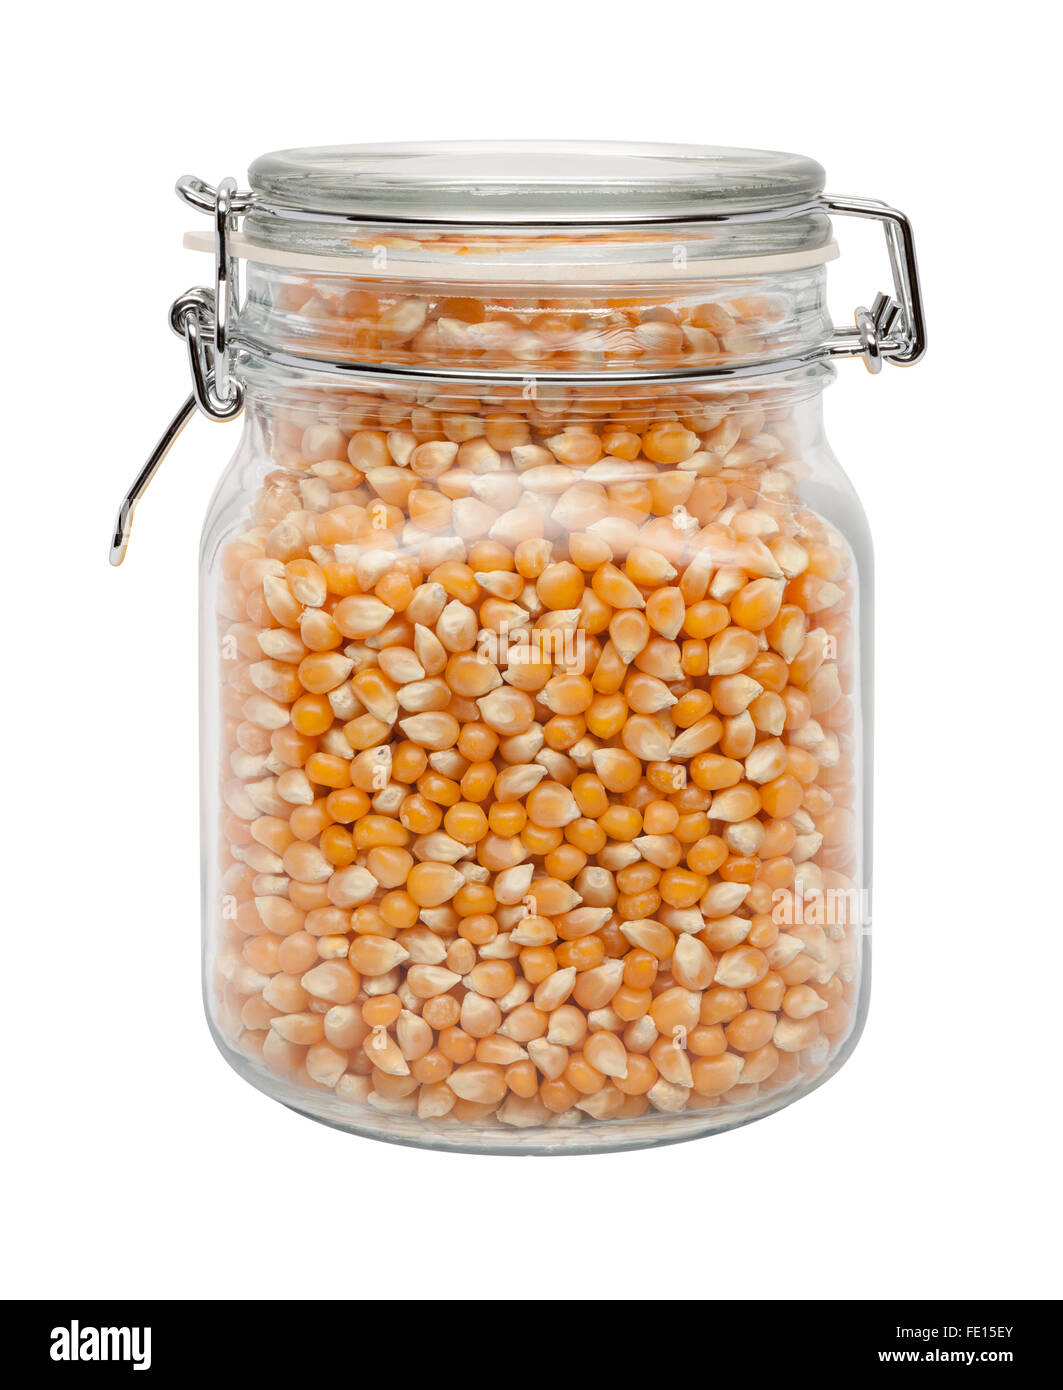 Ungekocht Popcorn in einem Glas-Kanister mit einer Metallklemme. Das Bild zeigt einen Ausschnitt isoliert auf einem weißen Hintergrund. Stockfoto